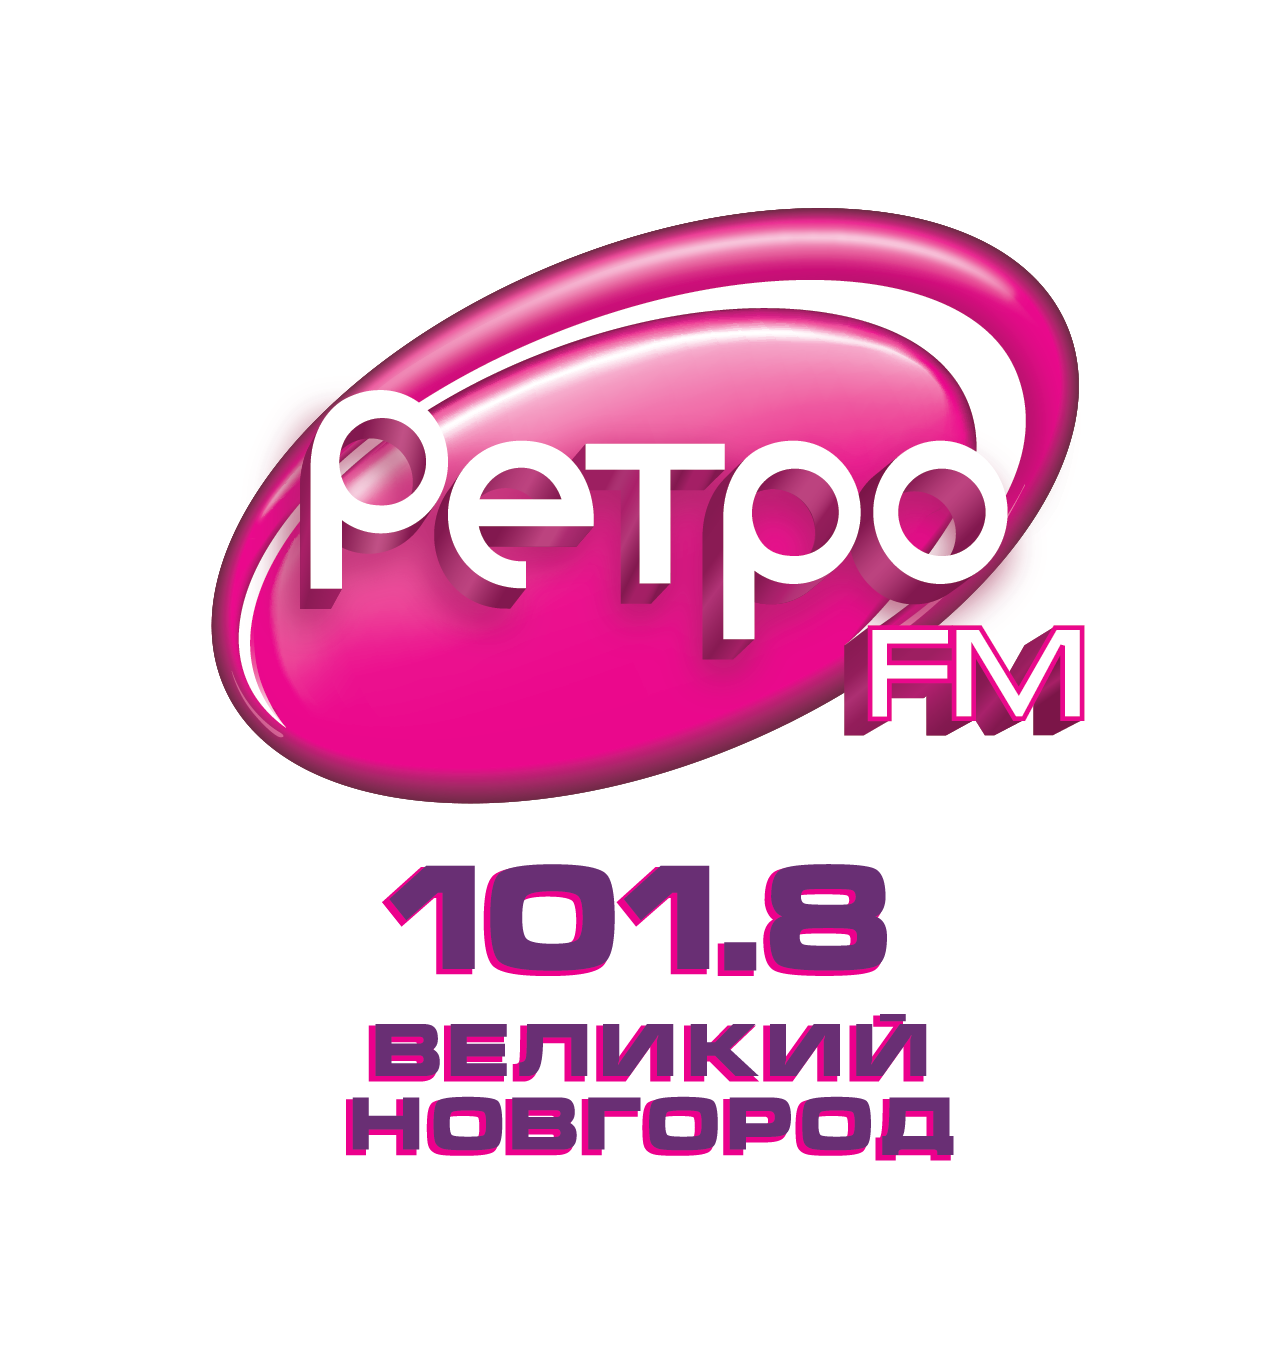 Логотип радиостанции ретро ФМ. Ретро fm лого. Лого радиостанции ретро. Ретро ФМ Смоленск. Радио ретро фм 70 80